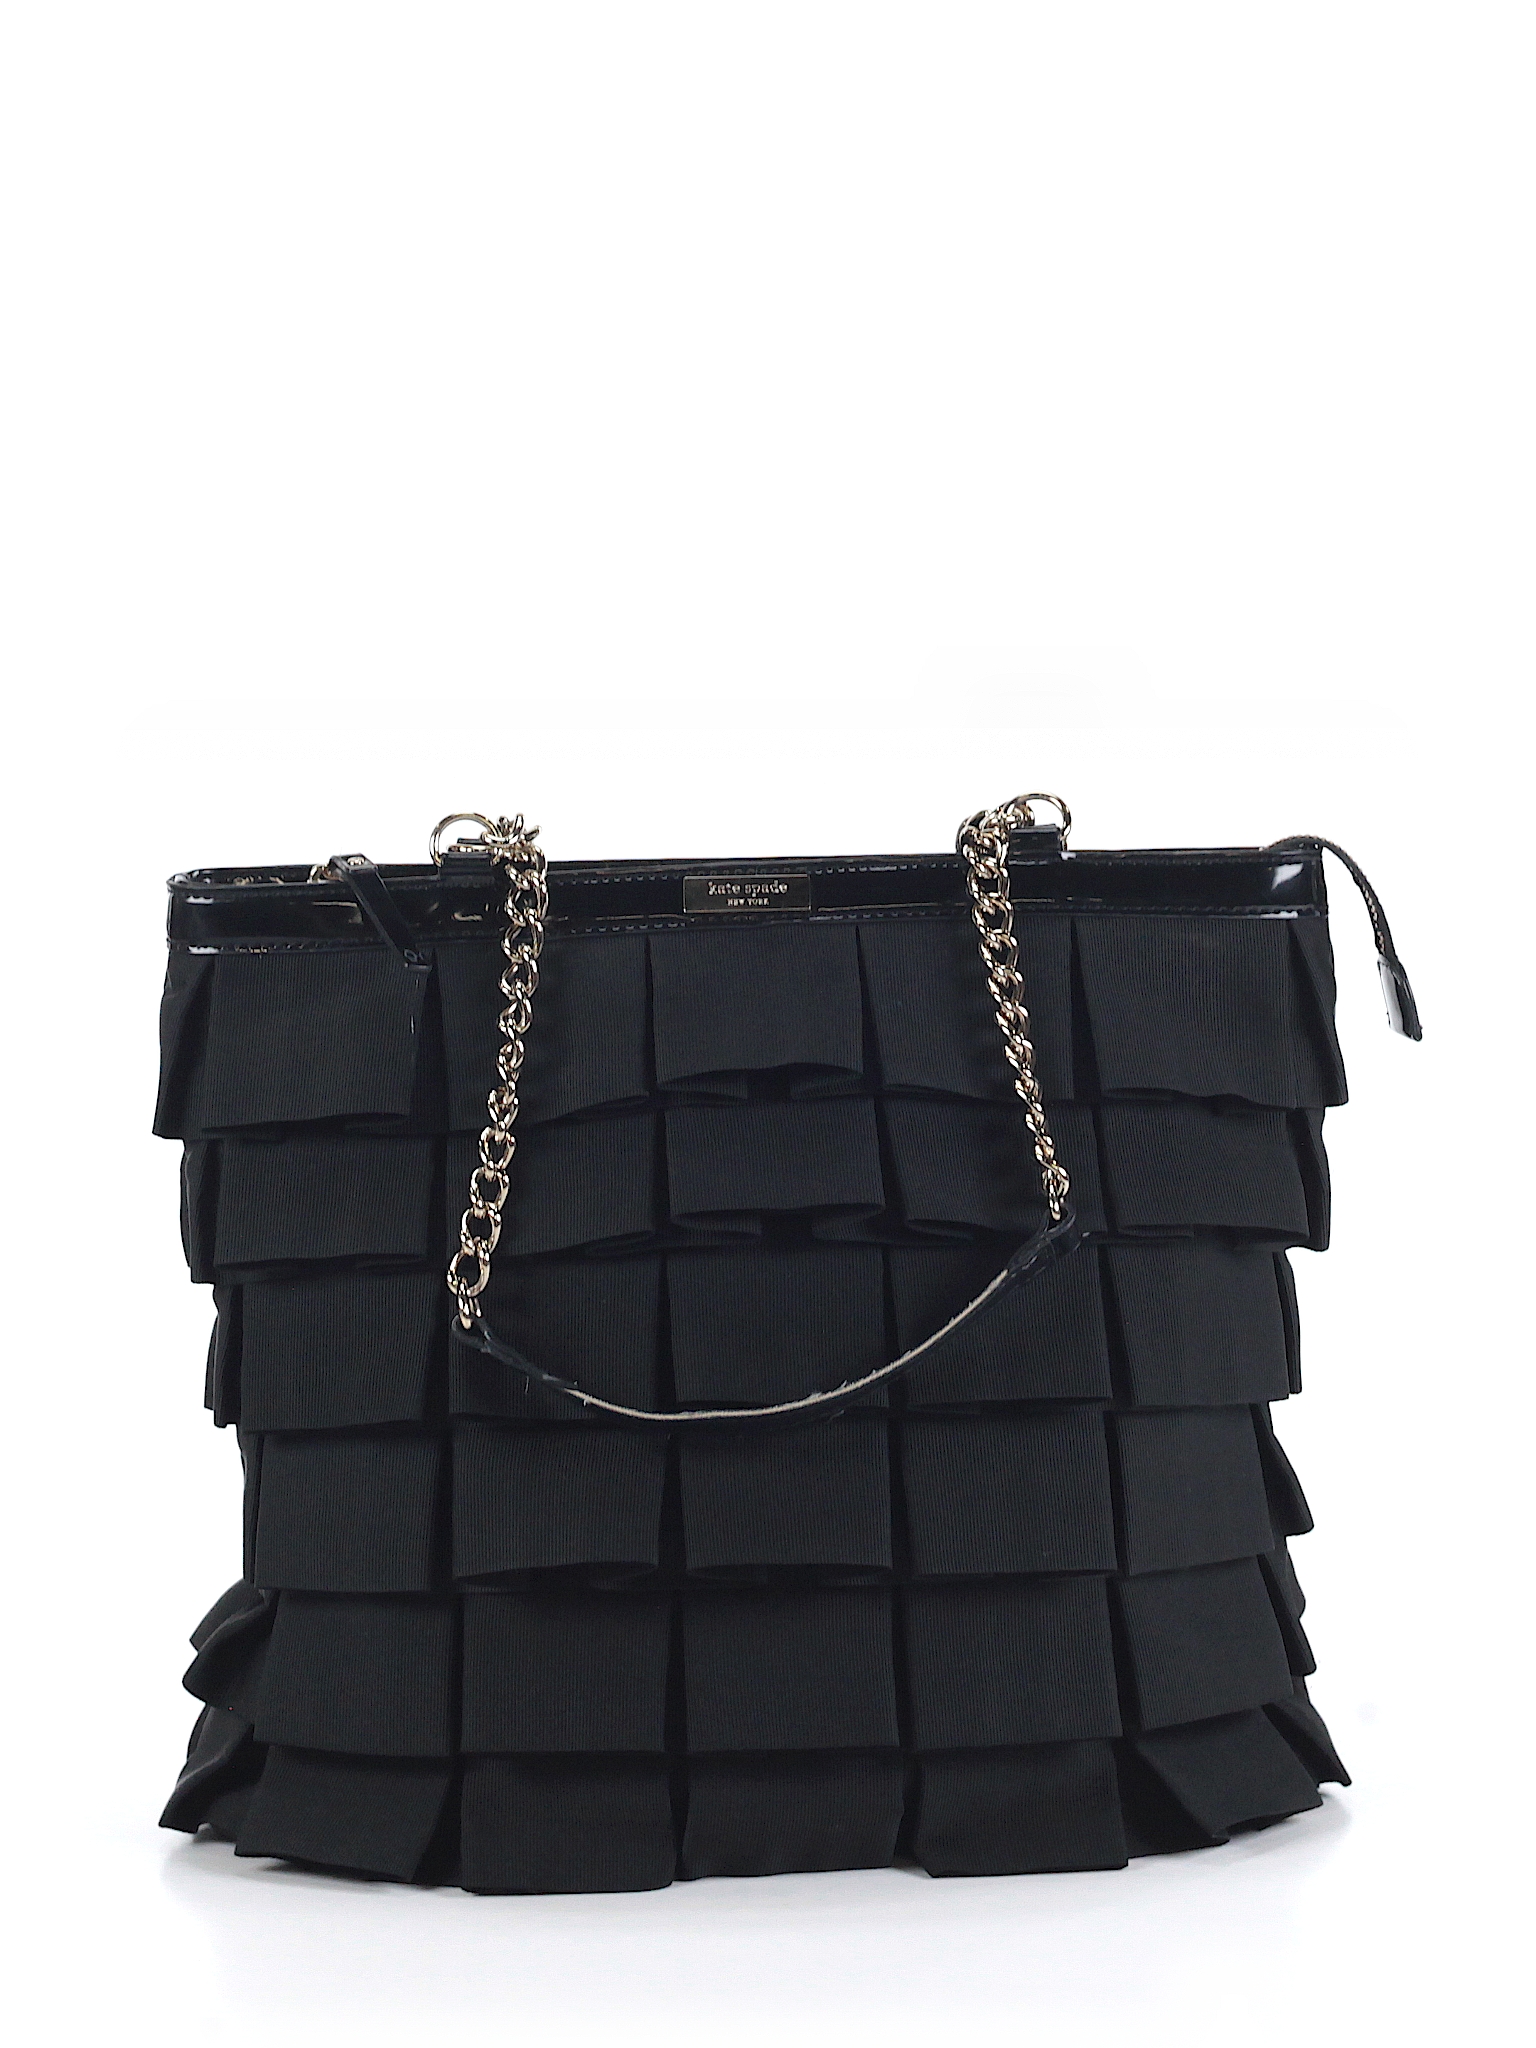 Kate Spade New York Solid Black Shoulder Bag One Size - 63% off | thredUP